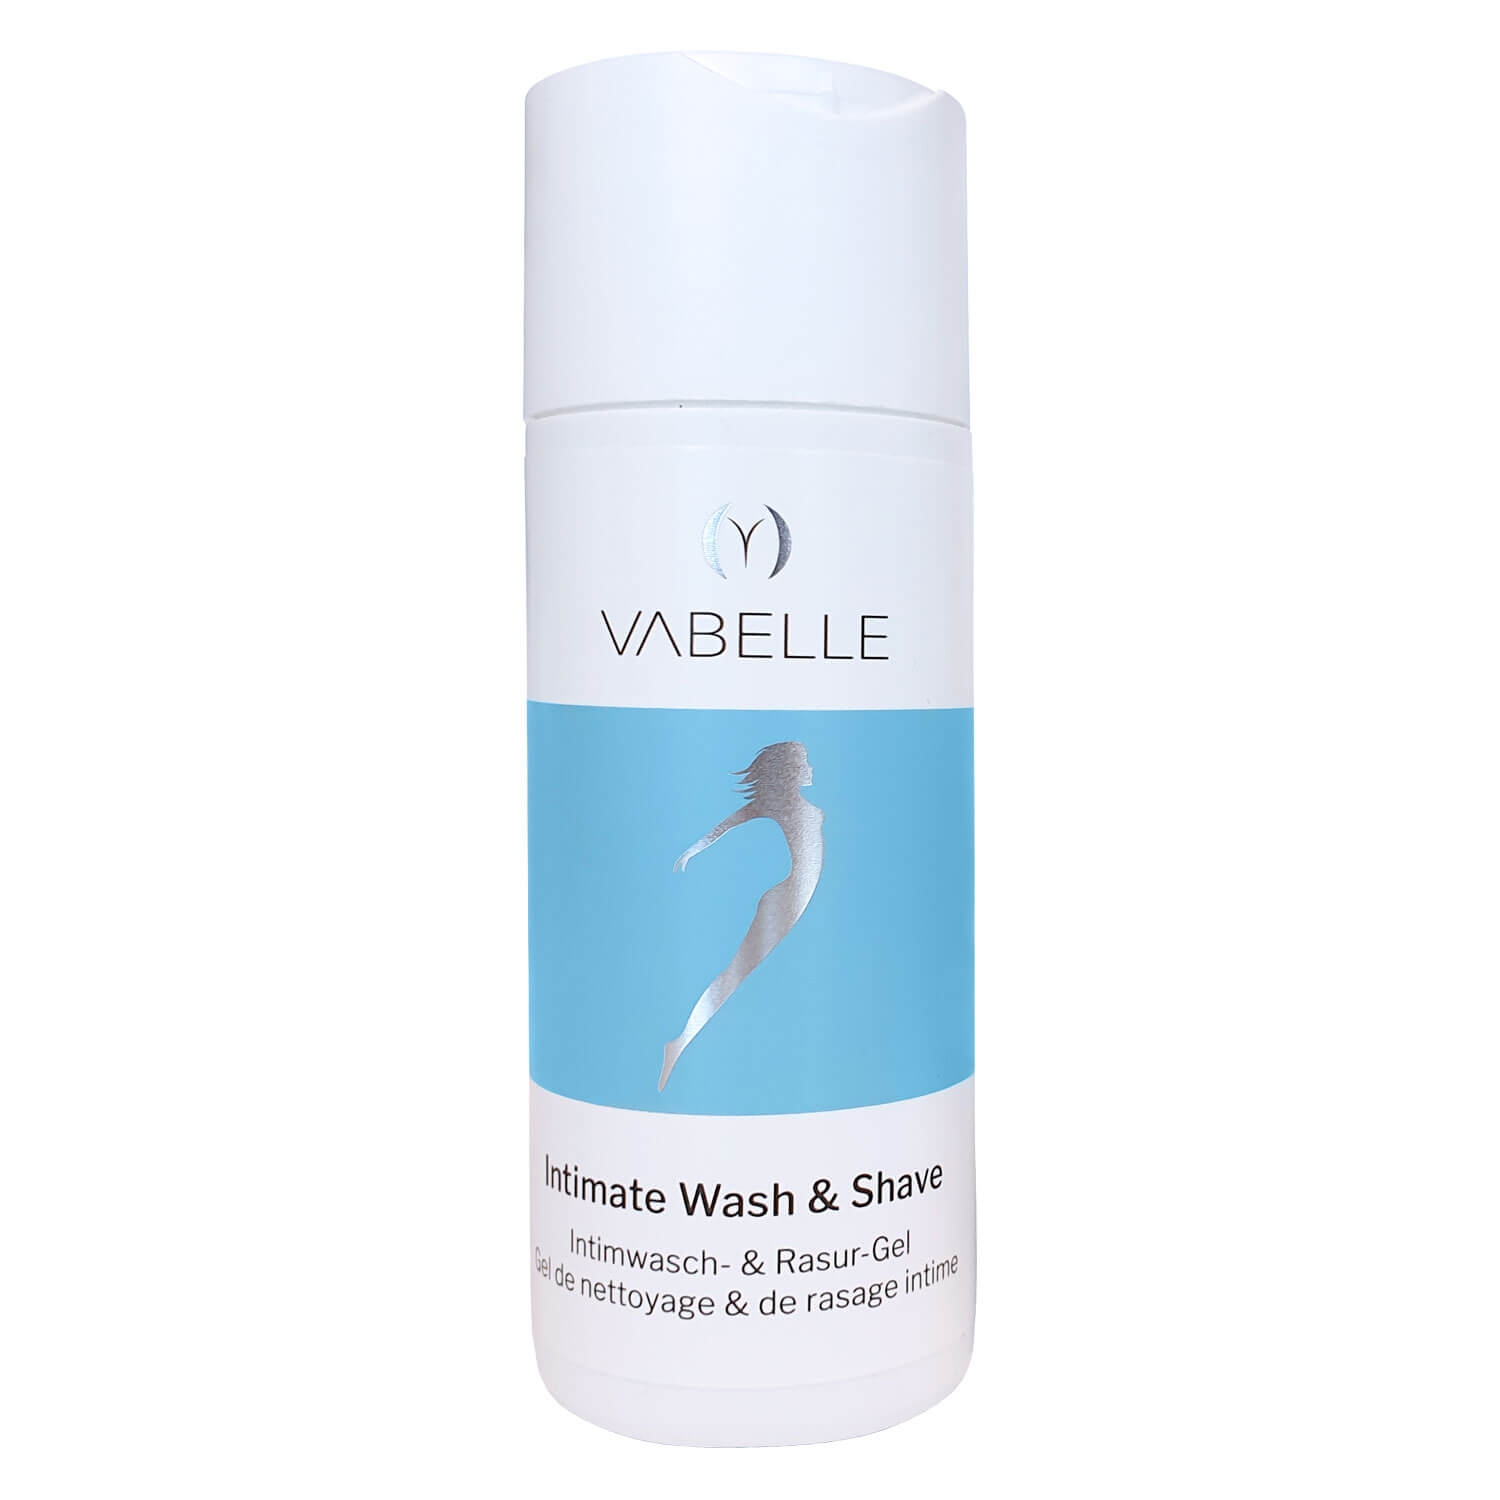 Produktbild von Vabelle - Intimate Wash & Shave